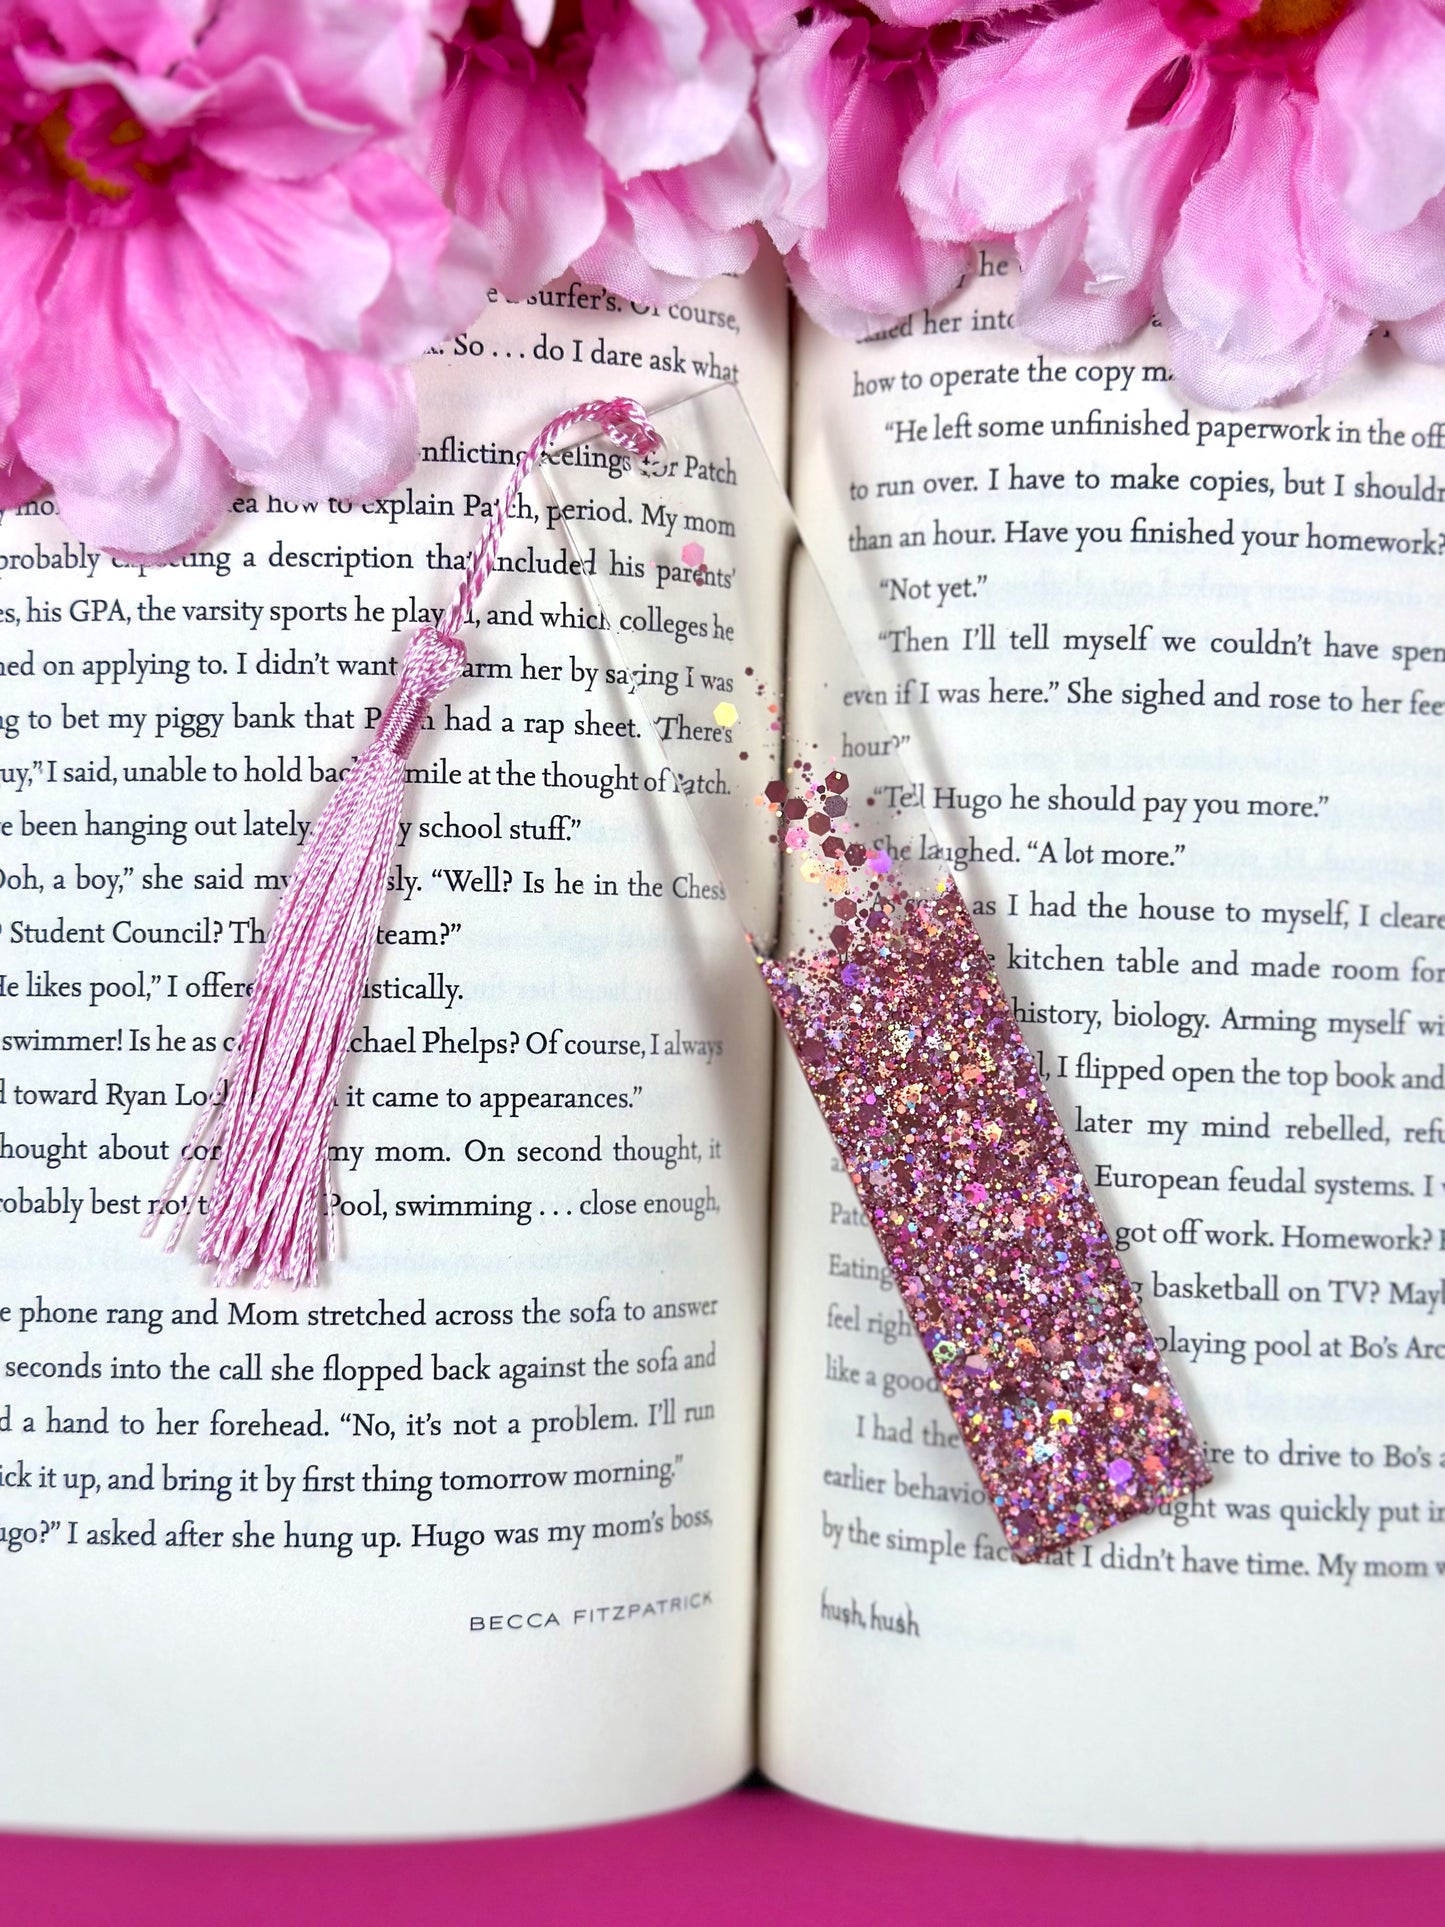 Glitter Resin Bookmarks